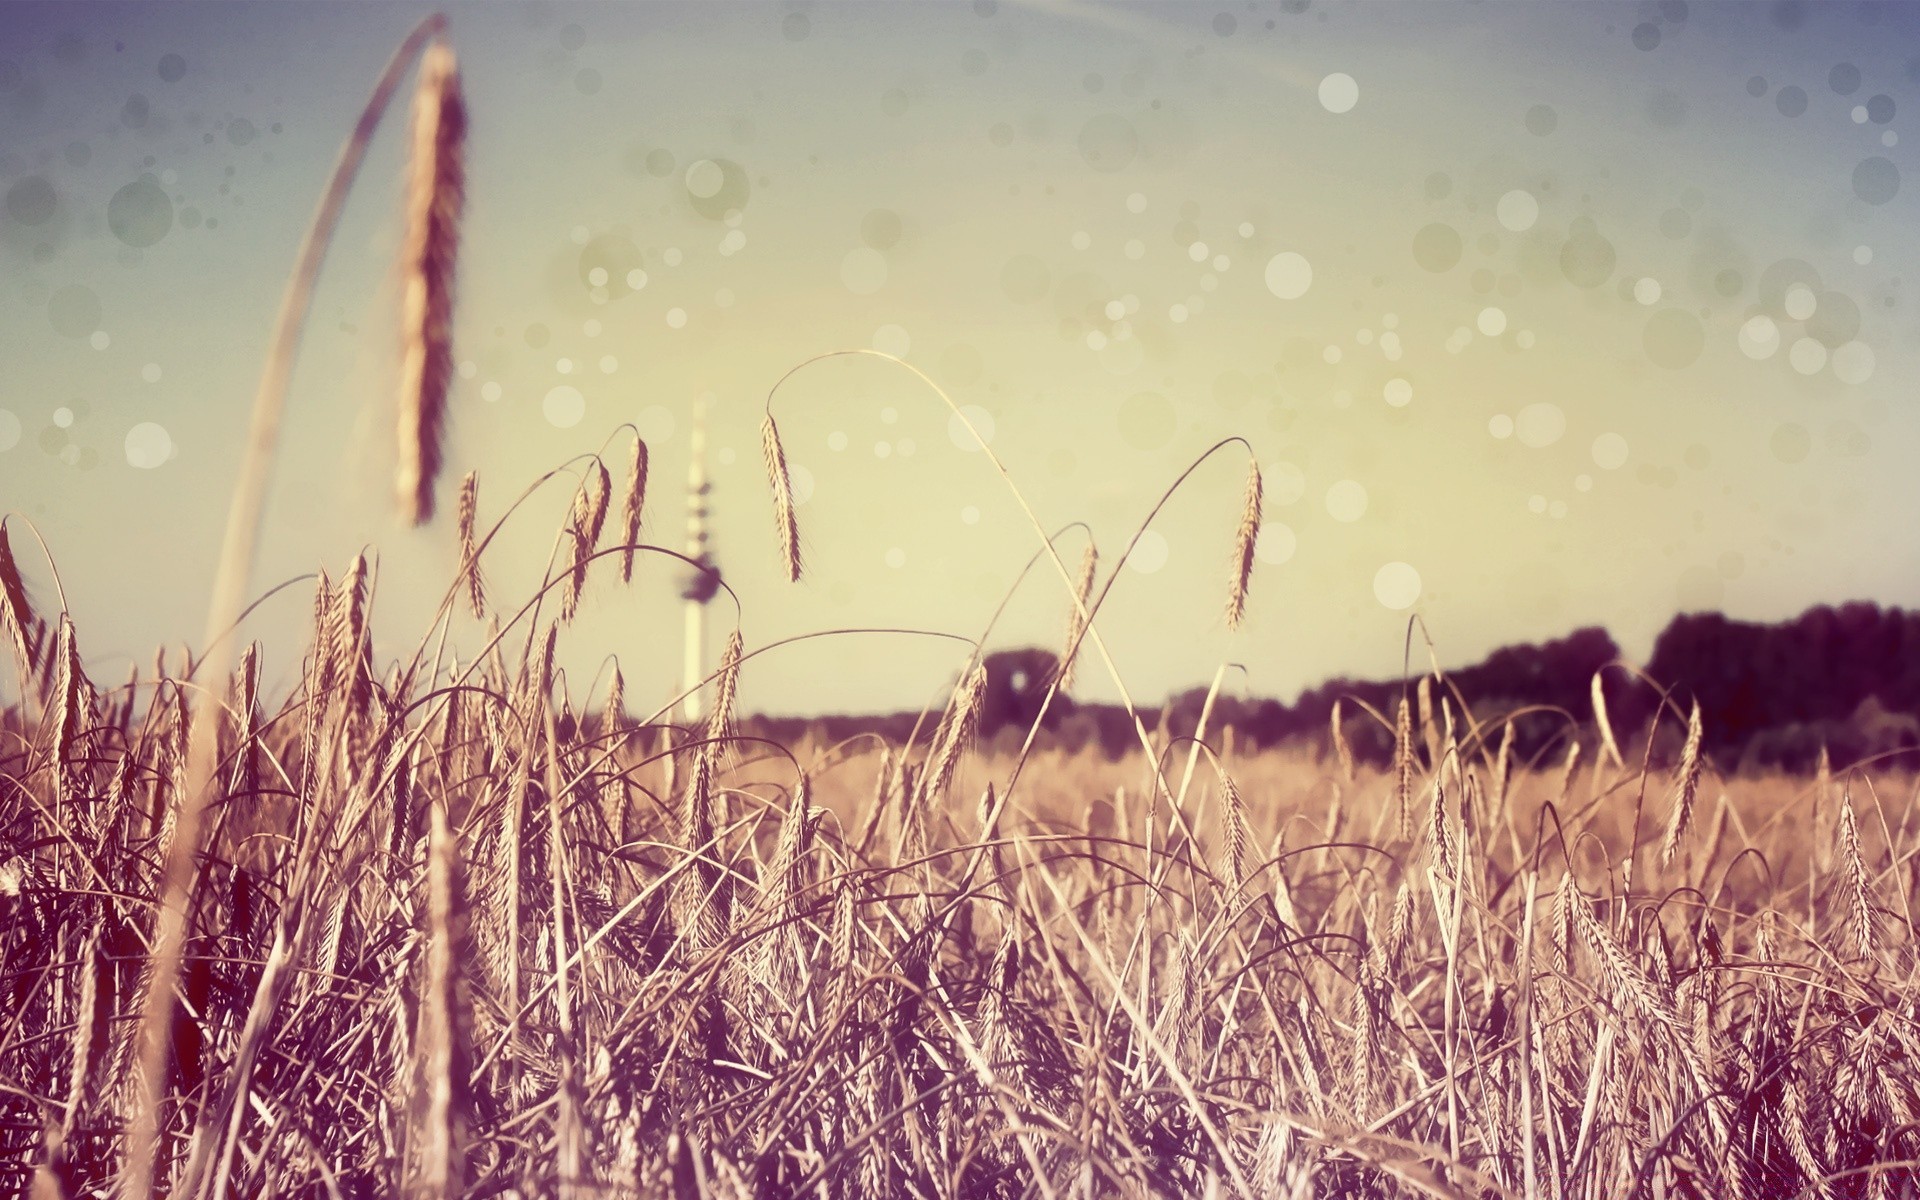 креатив поле трава сенокос небо хлопья сельских ферма лето пастбище пшеницы природа солнце сельской местности кукуруза пейзаж сельское хозяйство урожай страна золото соломы